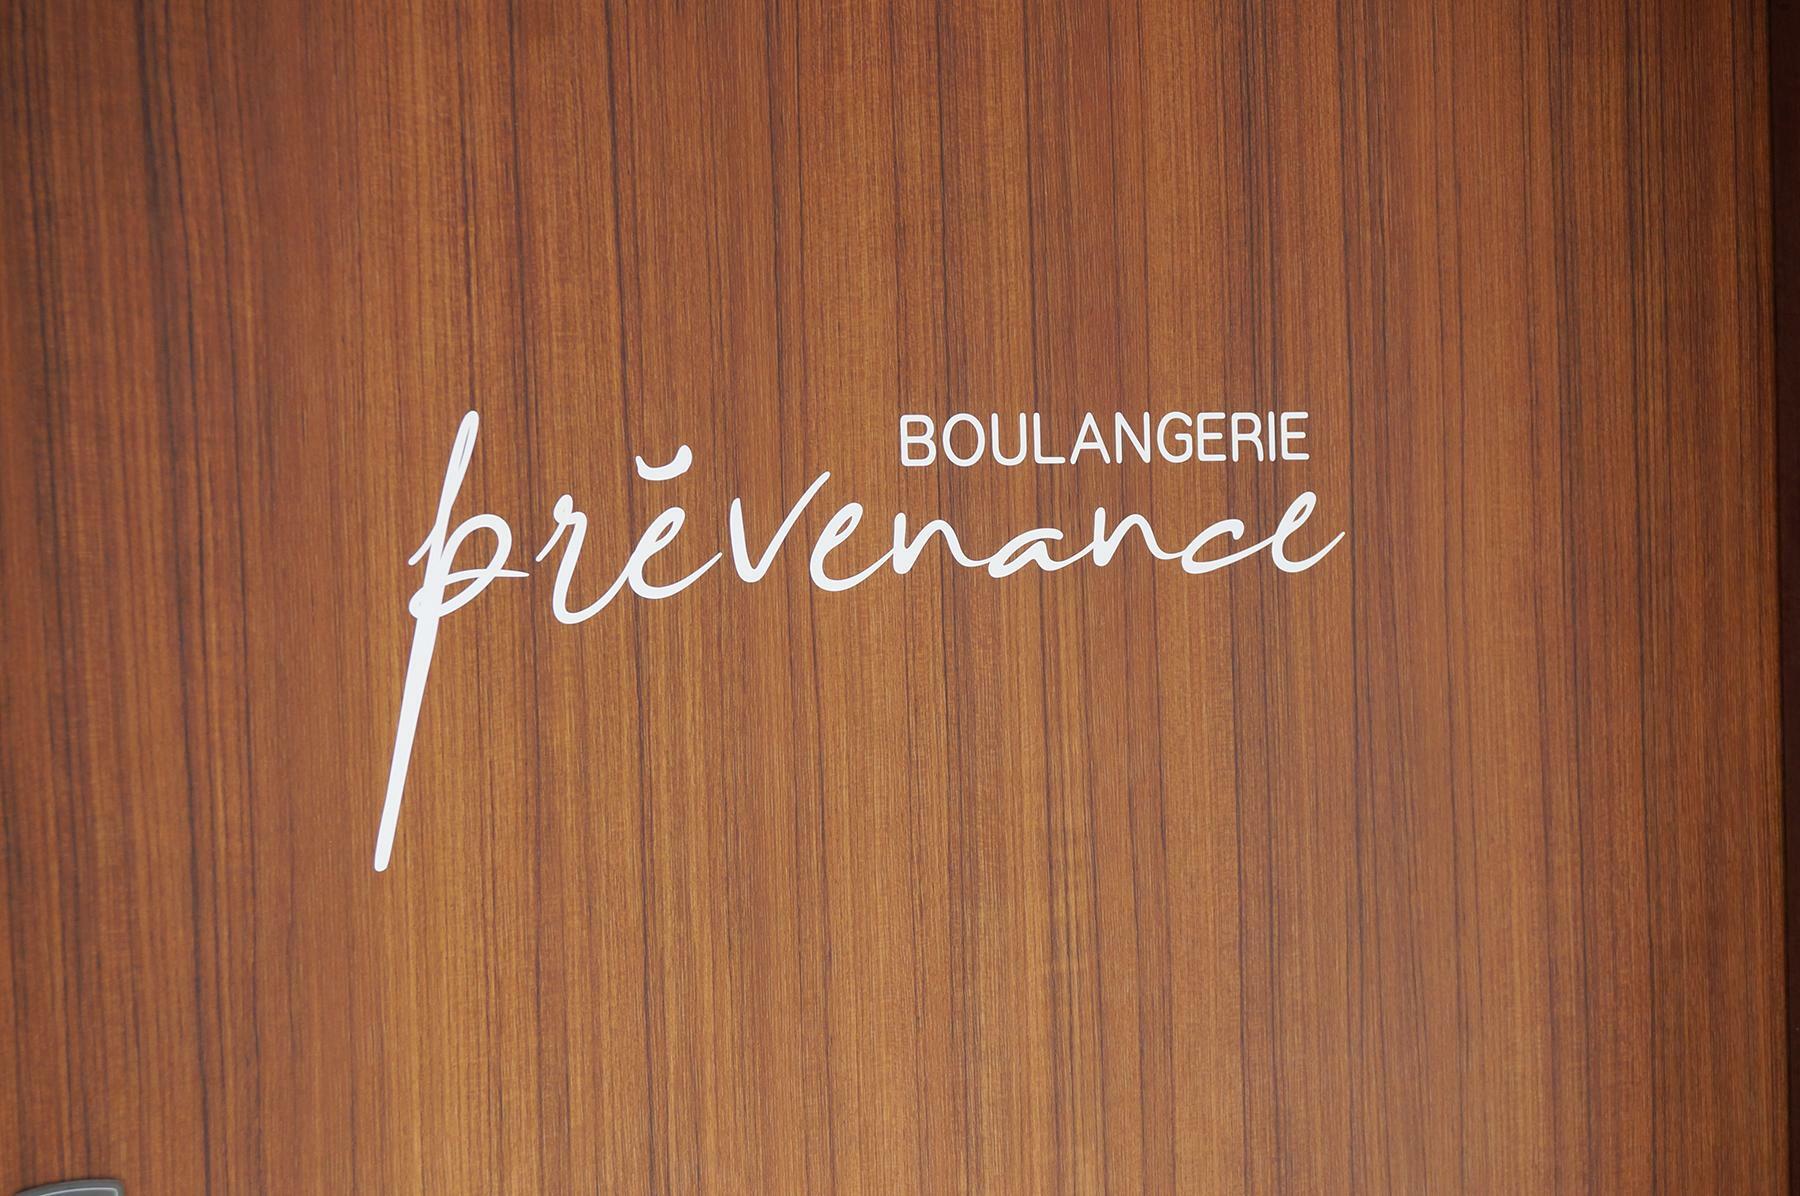 フランス語でBOULANGERIE（ブーランジュリー）はパン屋さん、prevenance（プレヴナンス）には思いやりや気配りといった意味があります。